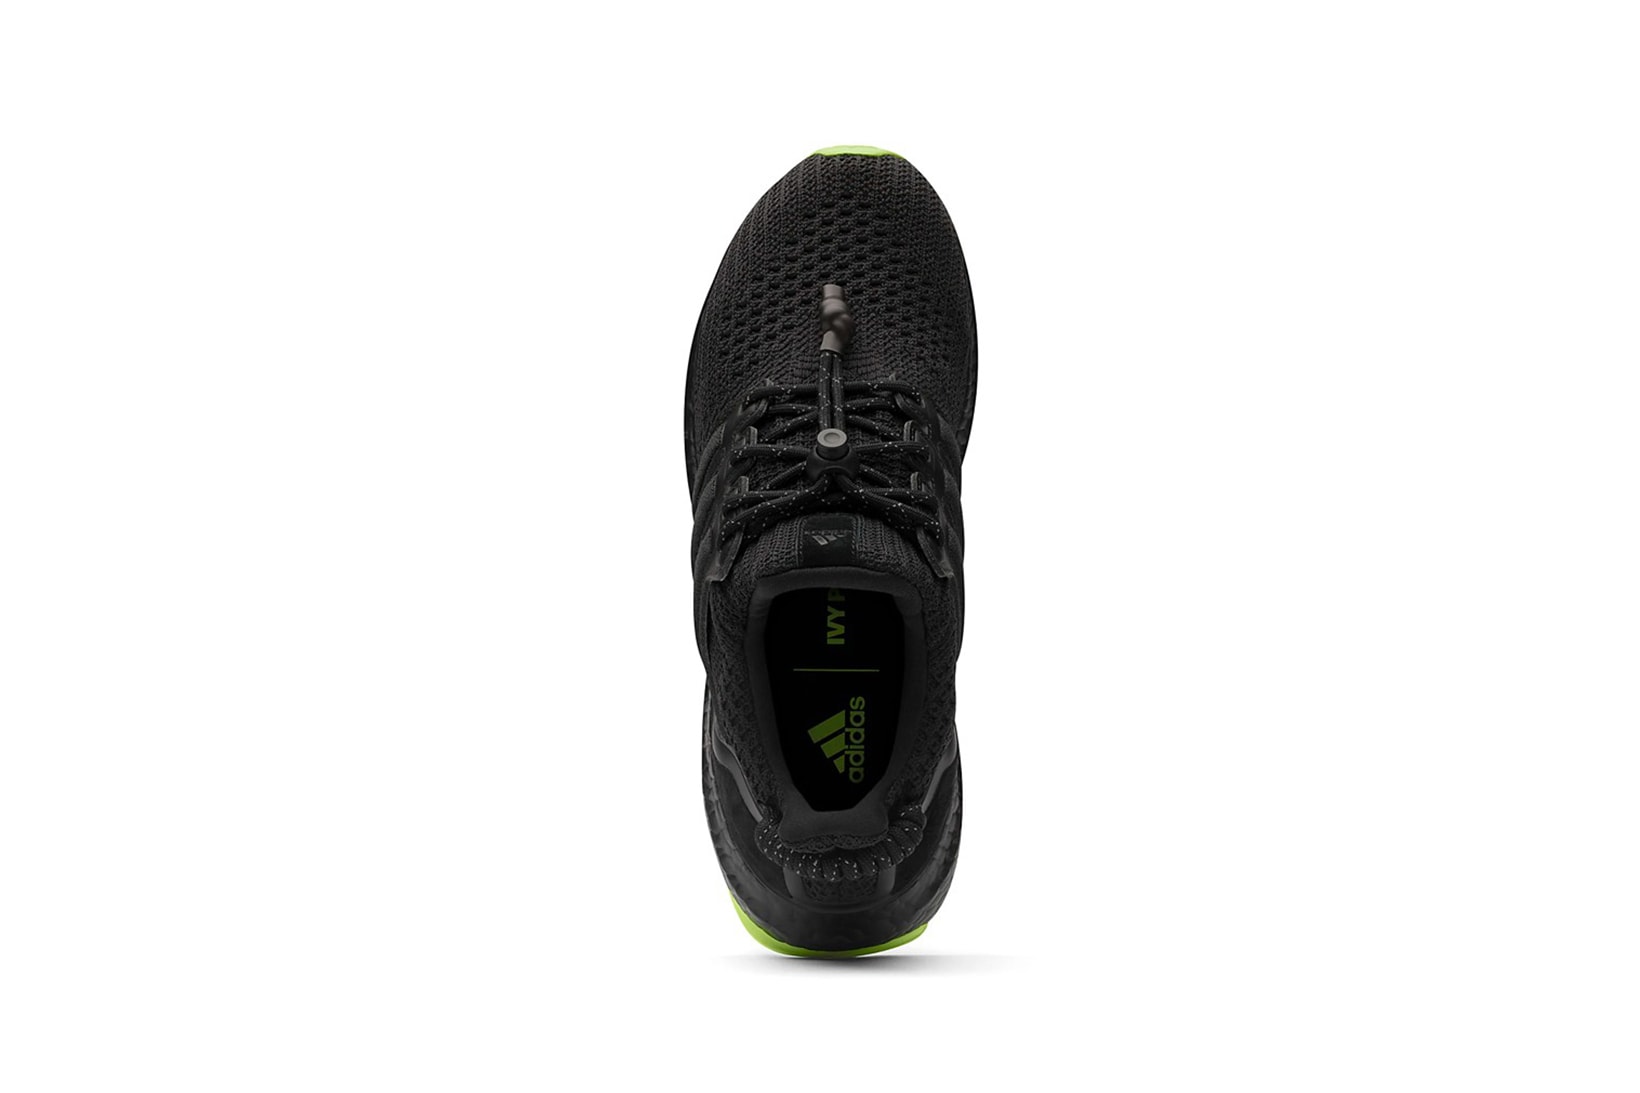 beyonce ivy park adidas ultraboost forum mid supersleek sneakers black white neon green sneakerhead footwear